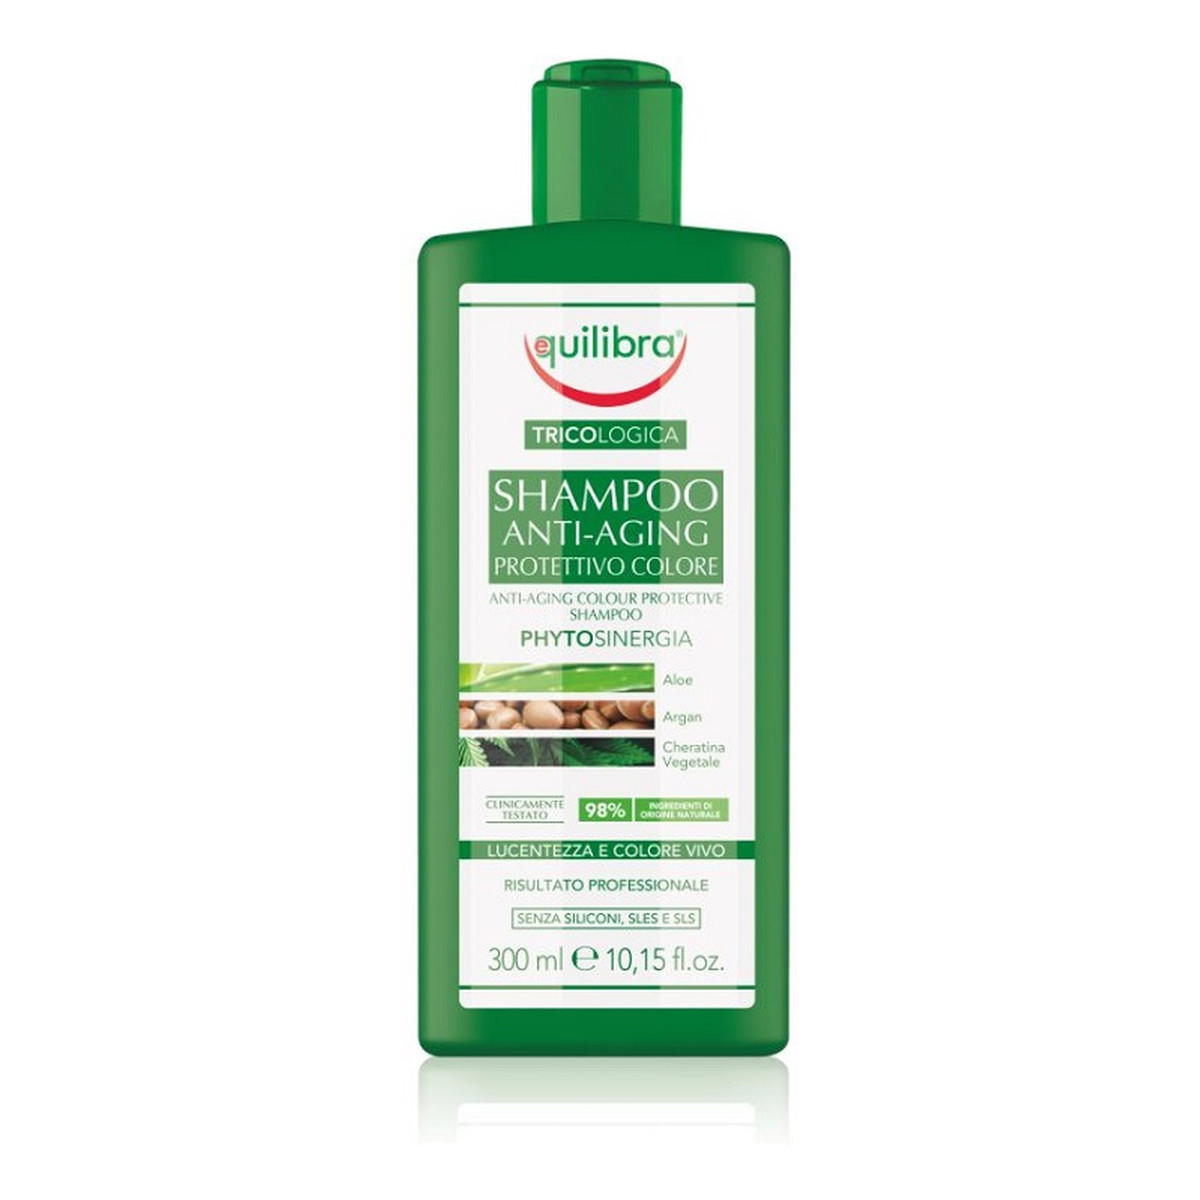 Equilibra Tricologica Shampoo Anti-Aging Protettivo Colore - Przeciwstarzeniowy szampon chroniący kolor 300ml